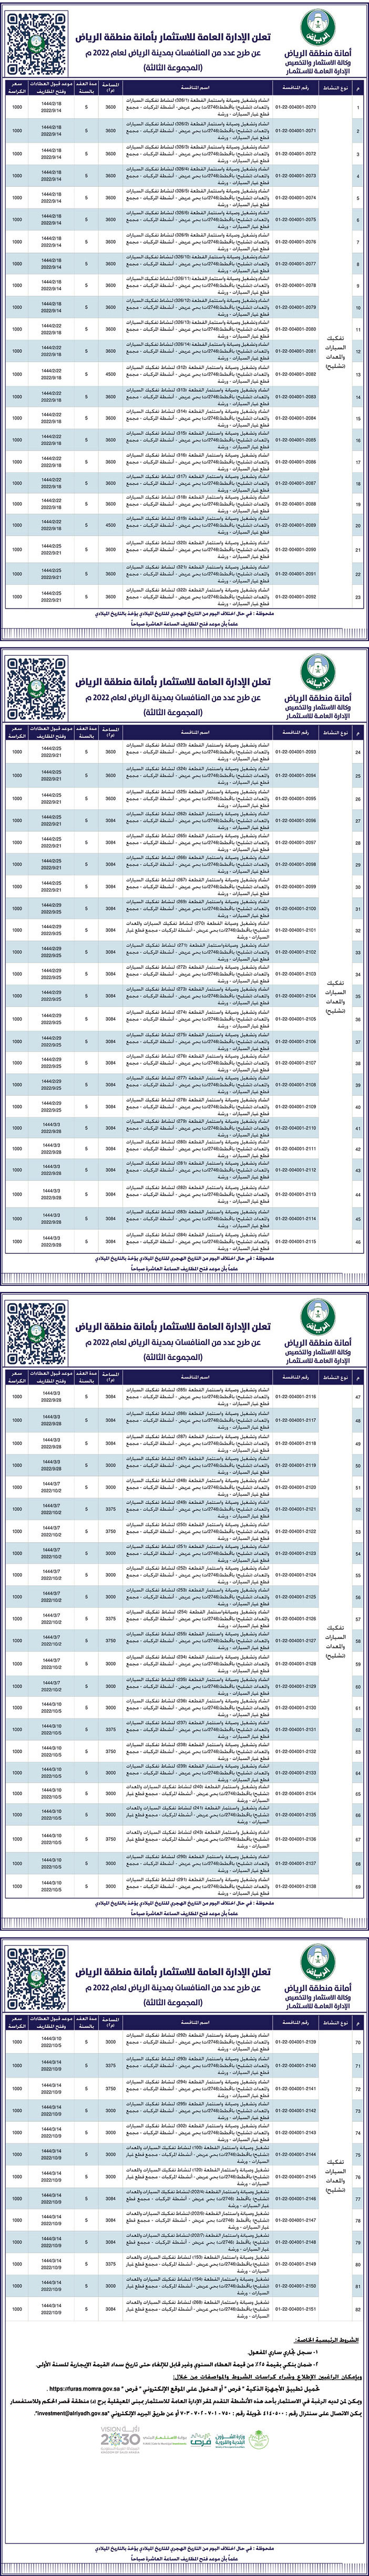 الإدارة العامة للاستثمار بمنطقة الرياض تطرح عدد من المنافسات بمدينة الرياض لعام 2022م 